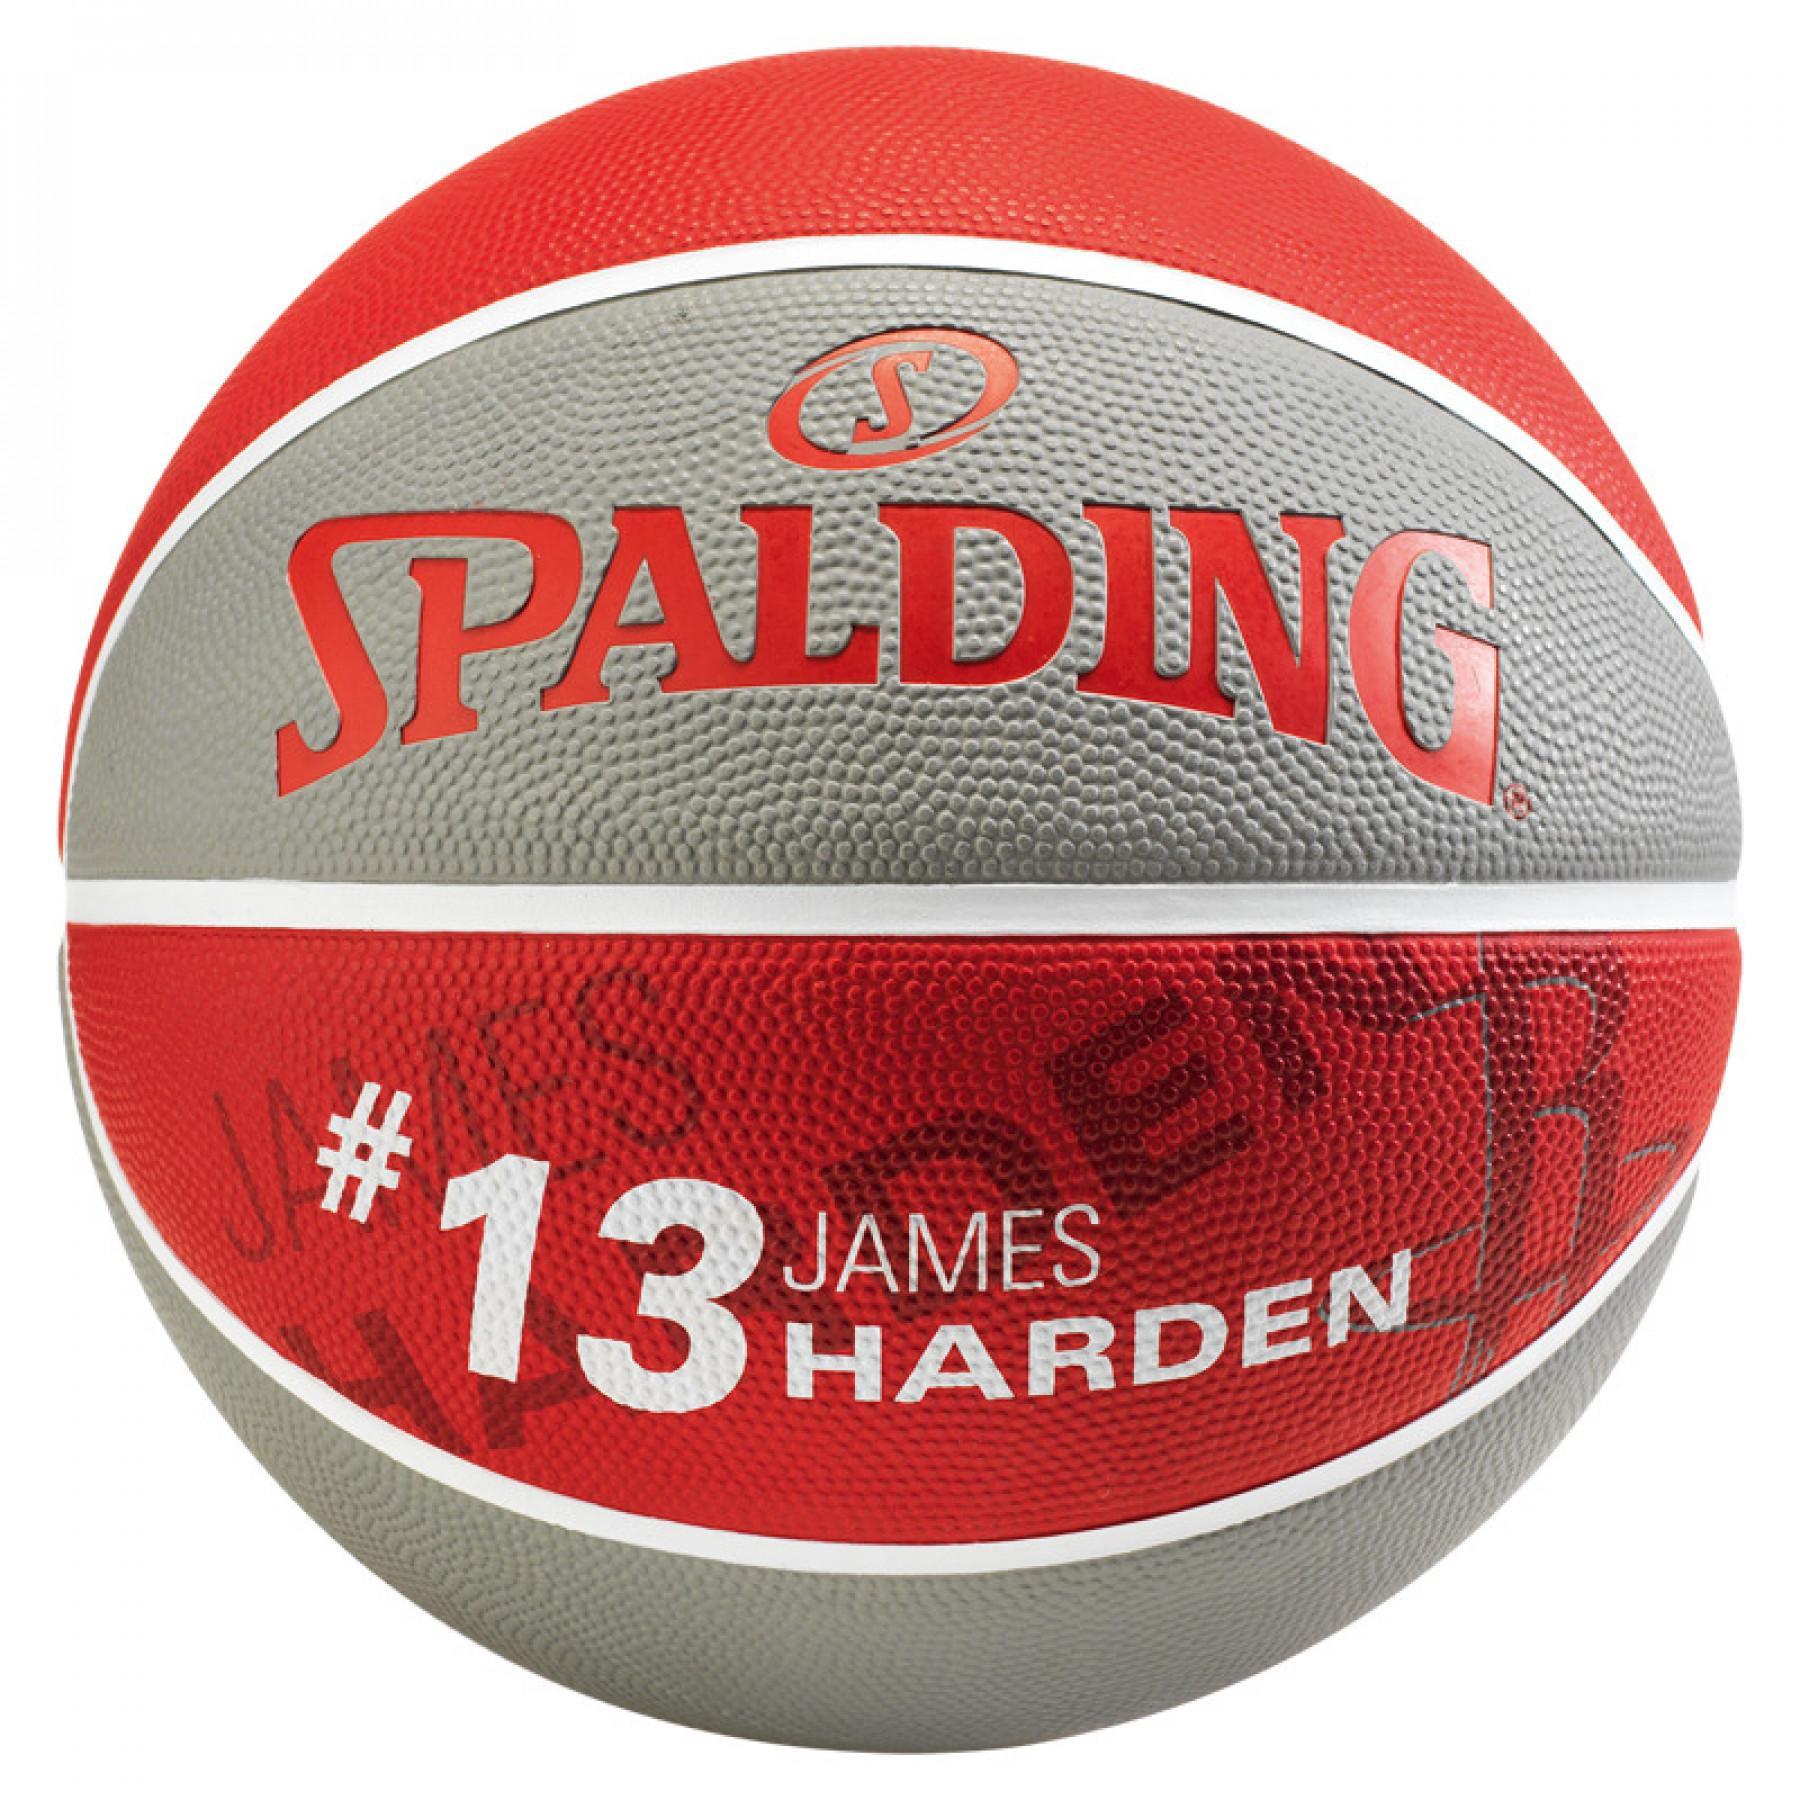 Spalding Ballon Player James Harden